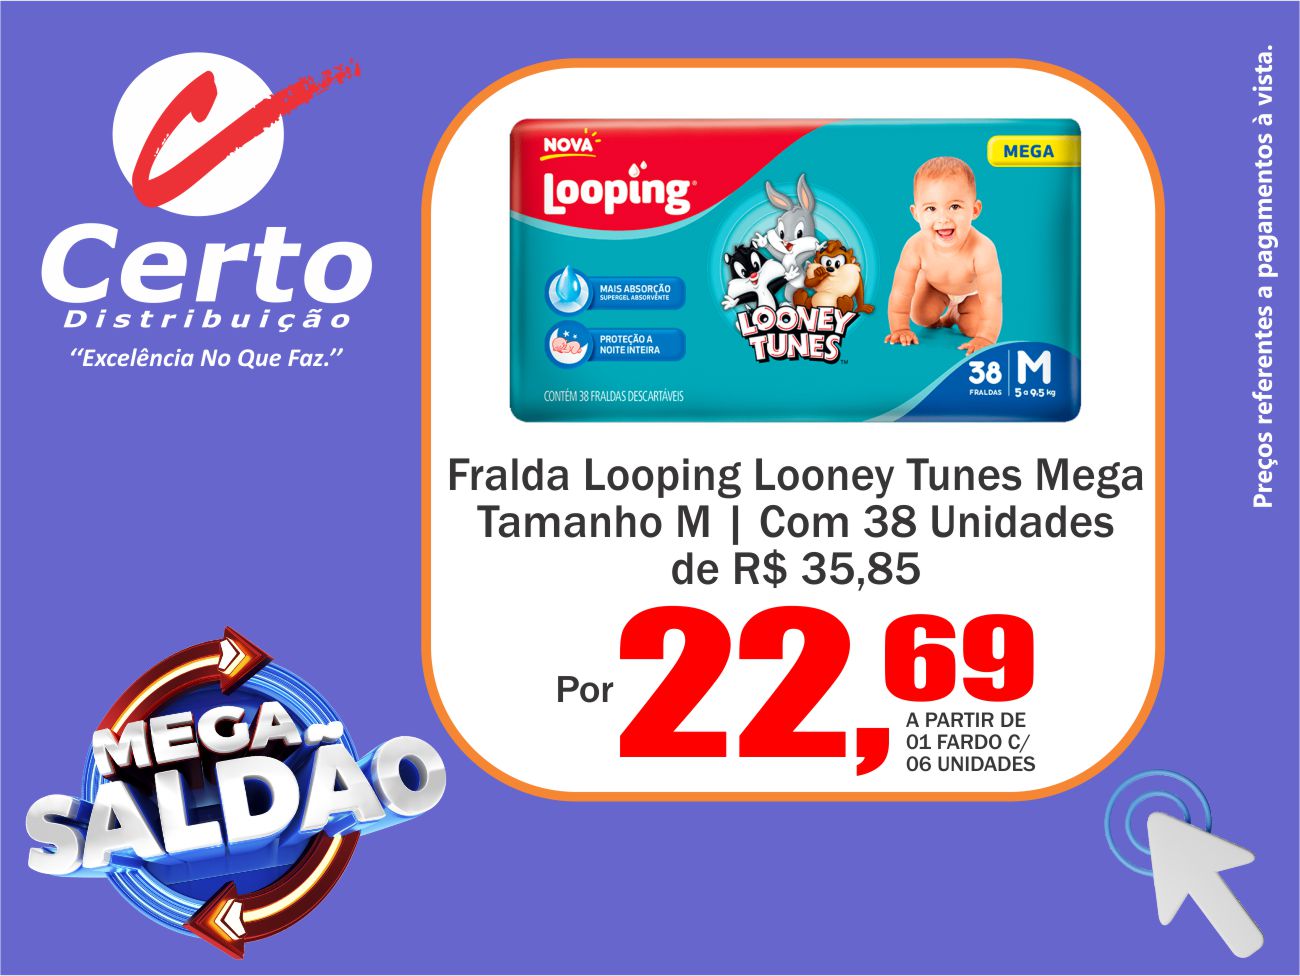 Fralda Looping Looney Tunes Hiper!👶